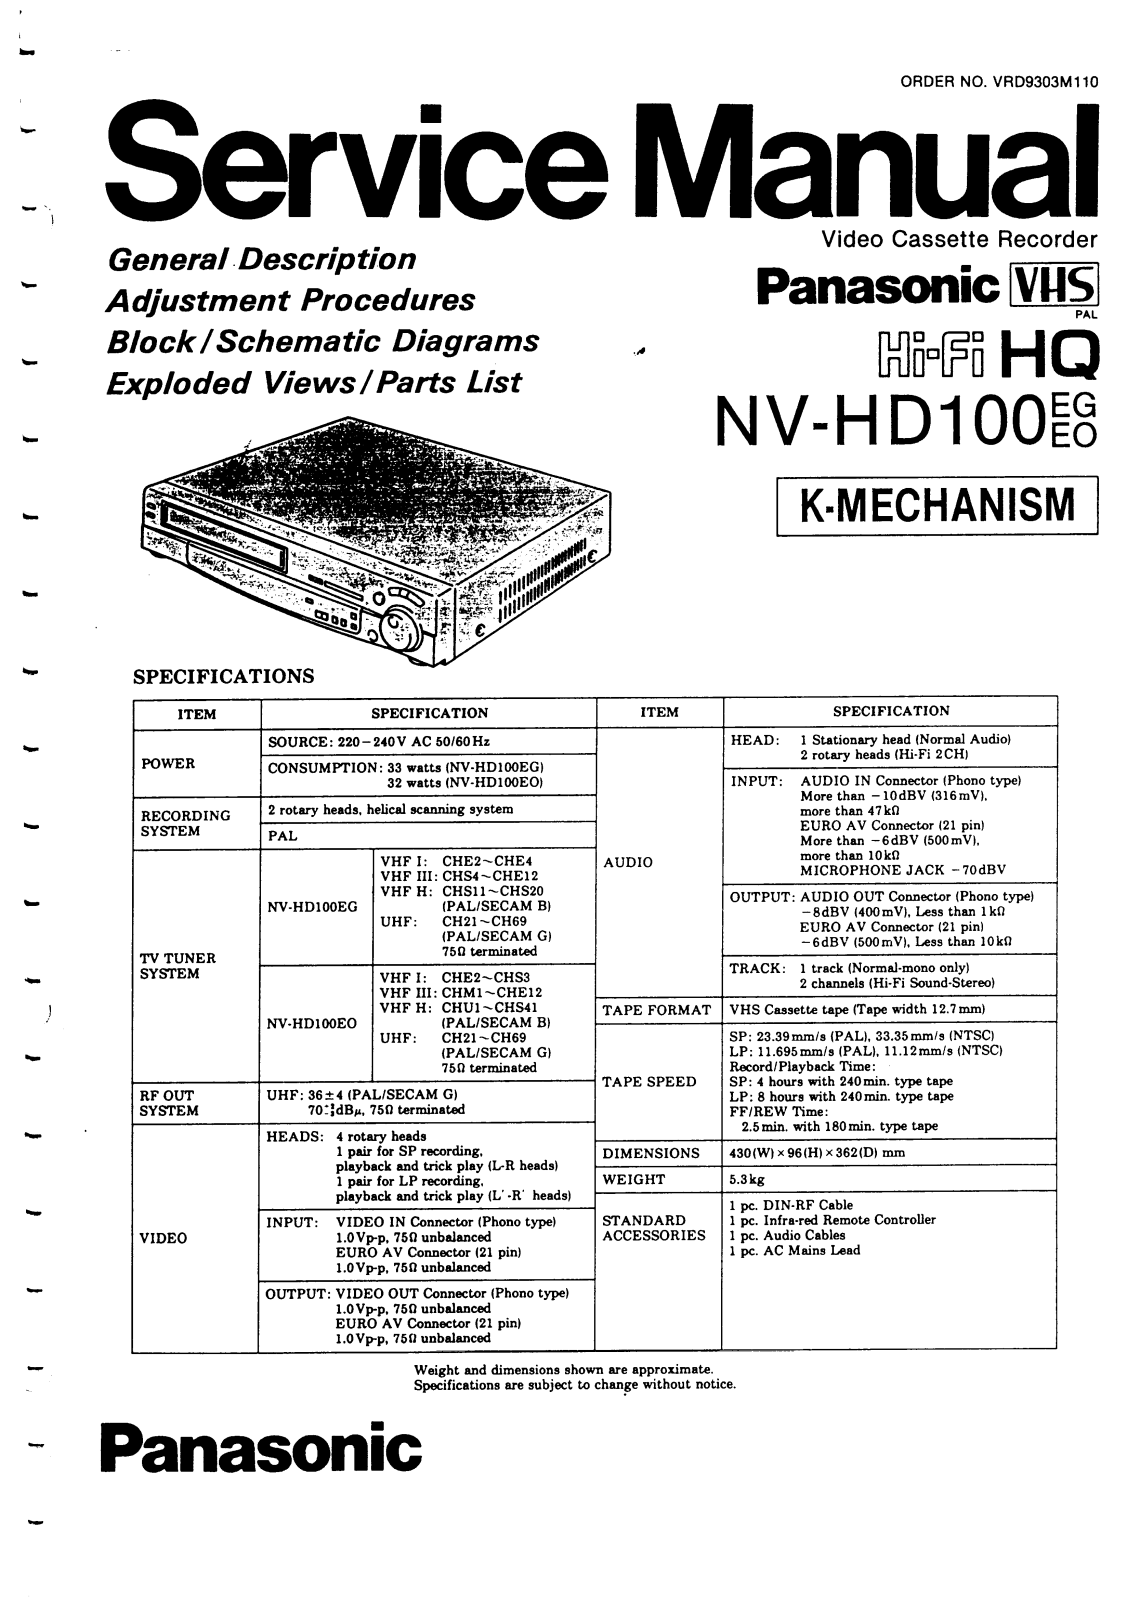 Panasonic NV-HD100 Service Manual